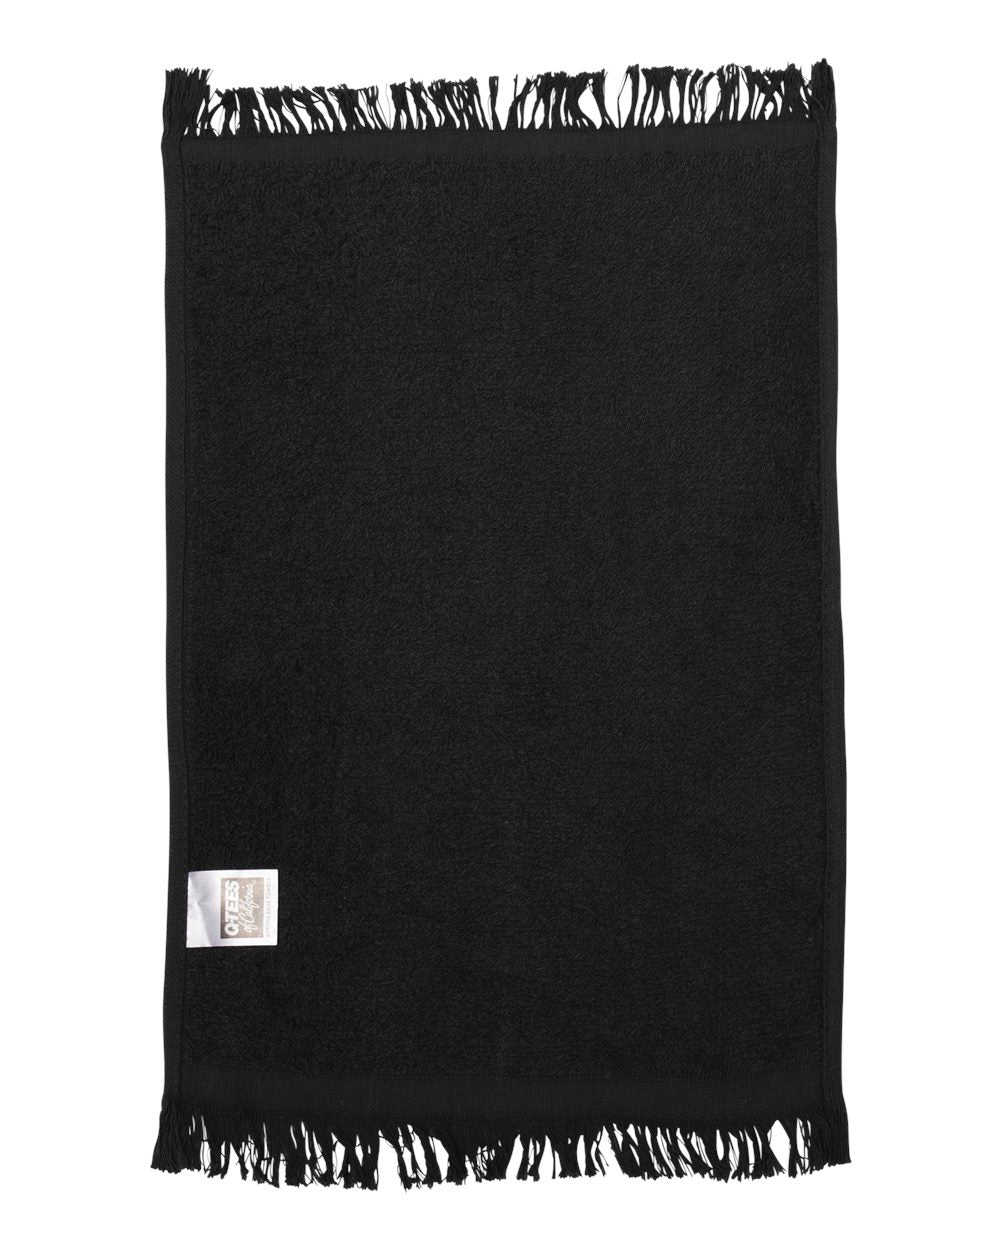 Q-Tees Fringed Fingertip Towel T100 #color_Black